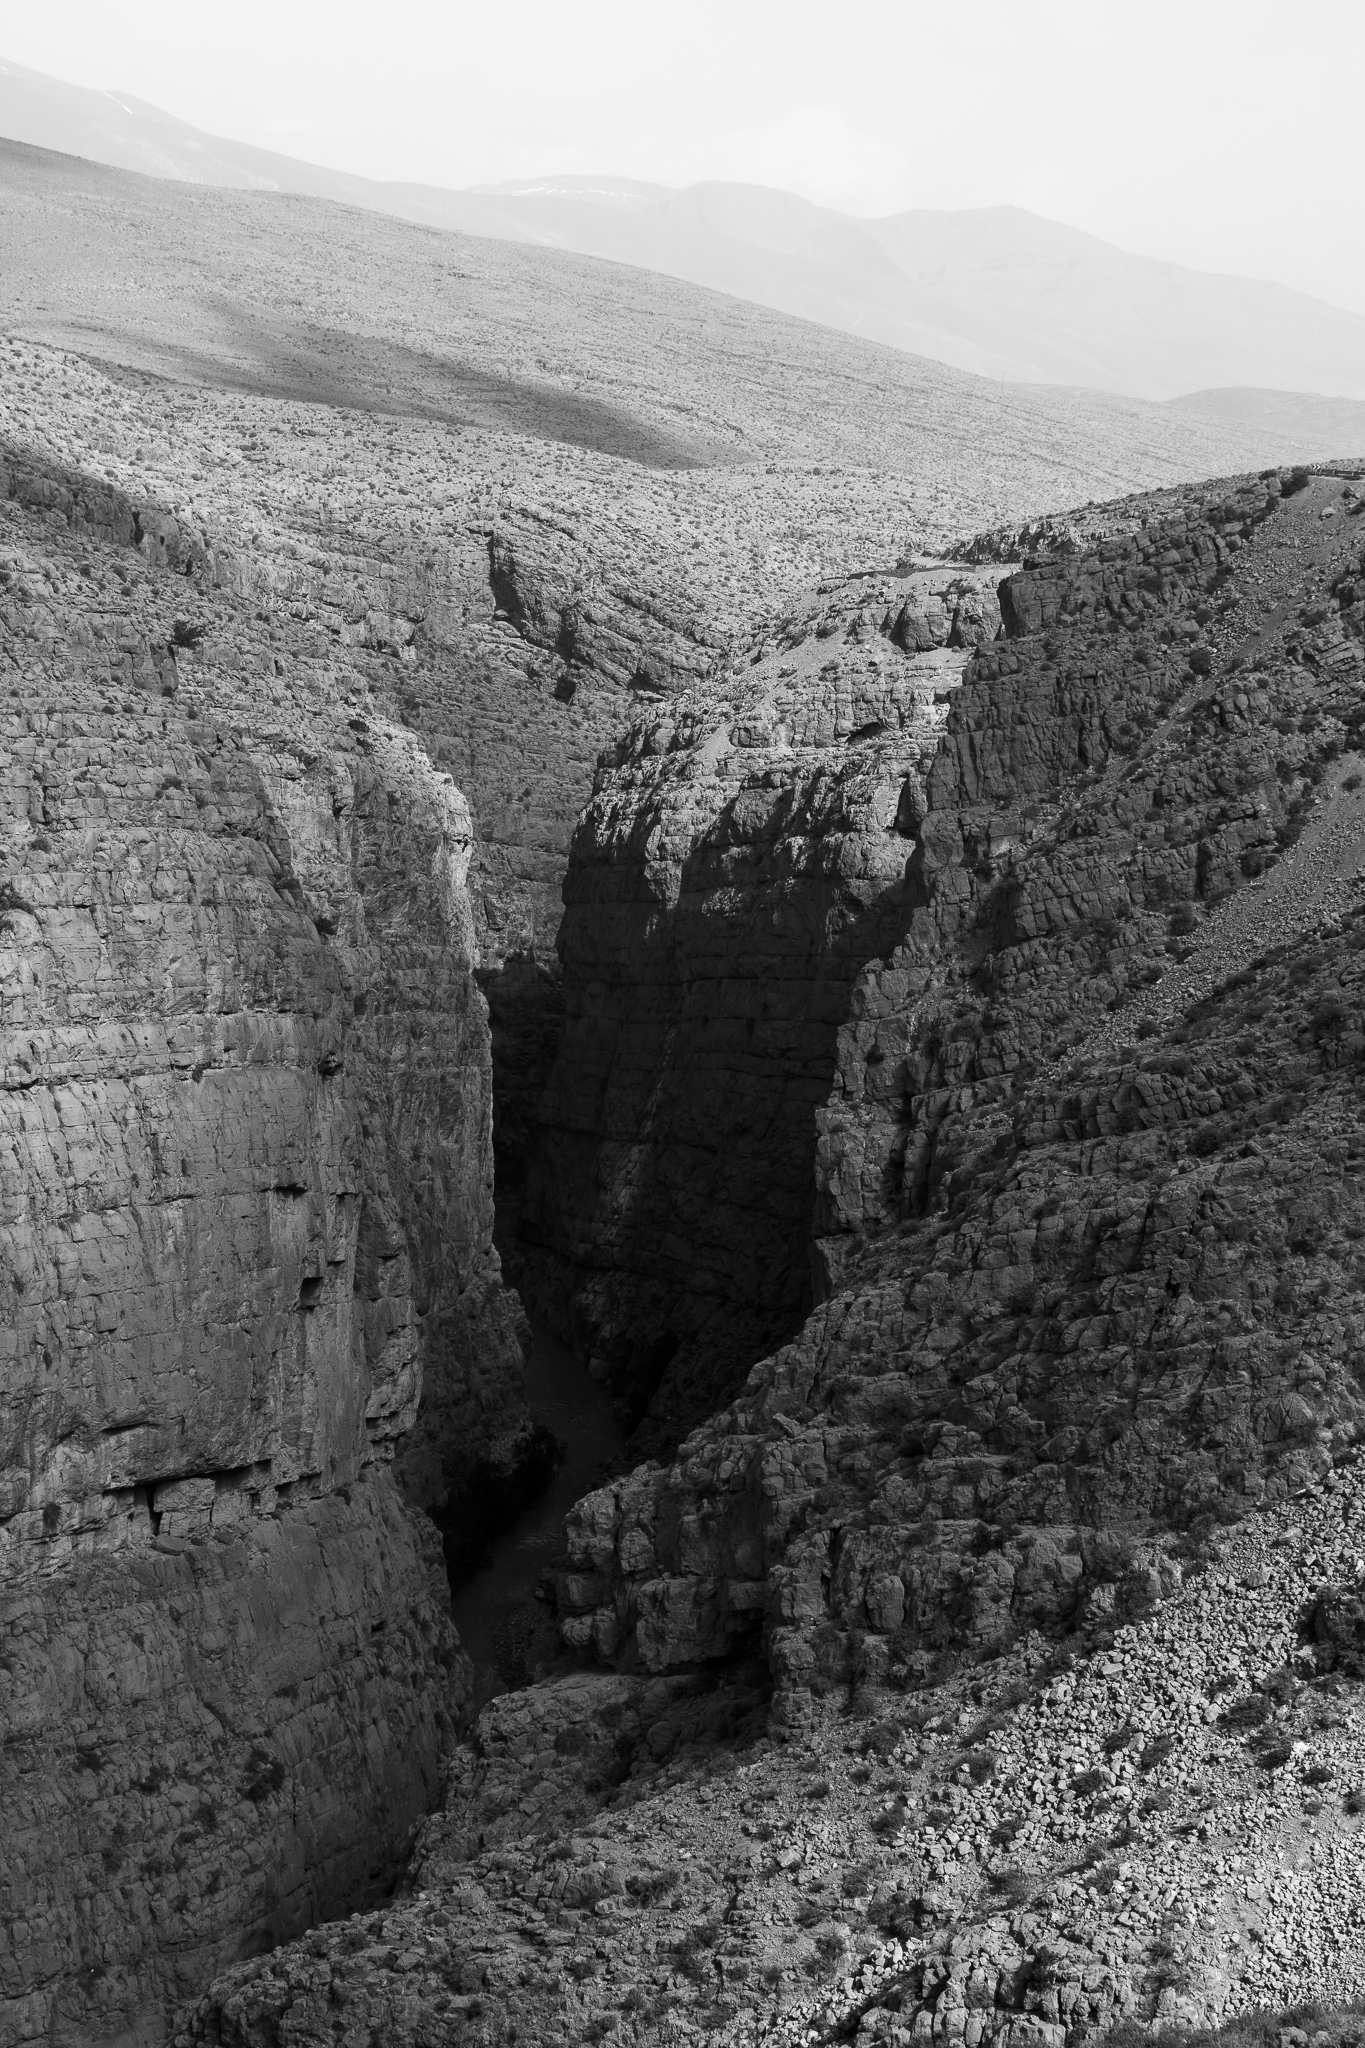 Situadas en el Alto Atlas, las áridas Gargantas del Dadés comienzan al norte de la localidad de Boumalne. <br>Acantilados de 300 metros de altura y 27 km de largo se extienden por el profundo valle del Dadès, nombre del río que las excava.